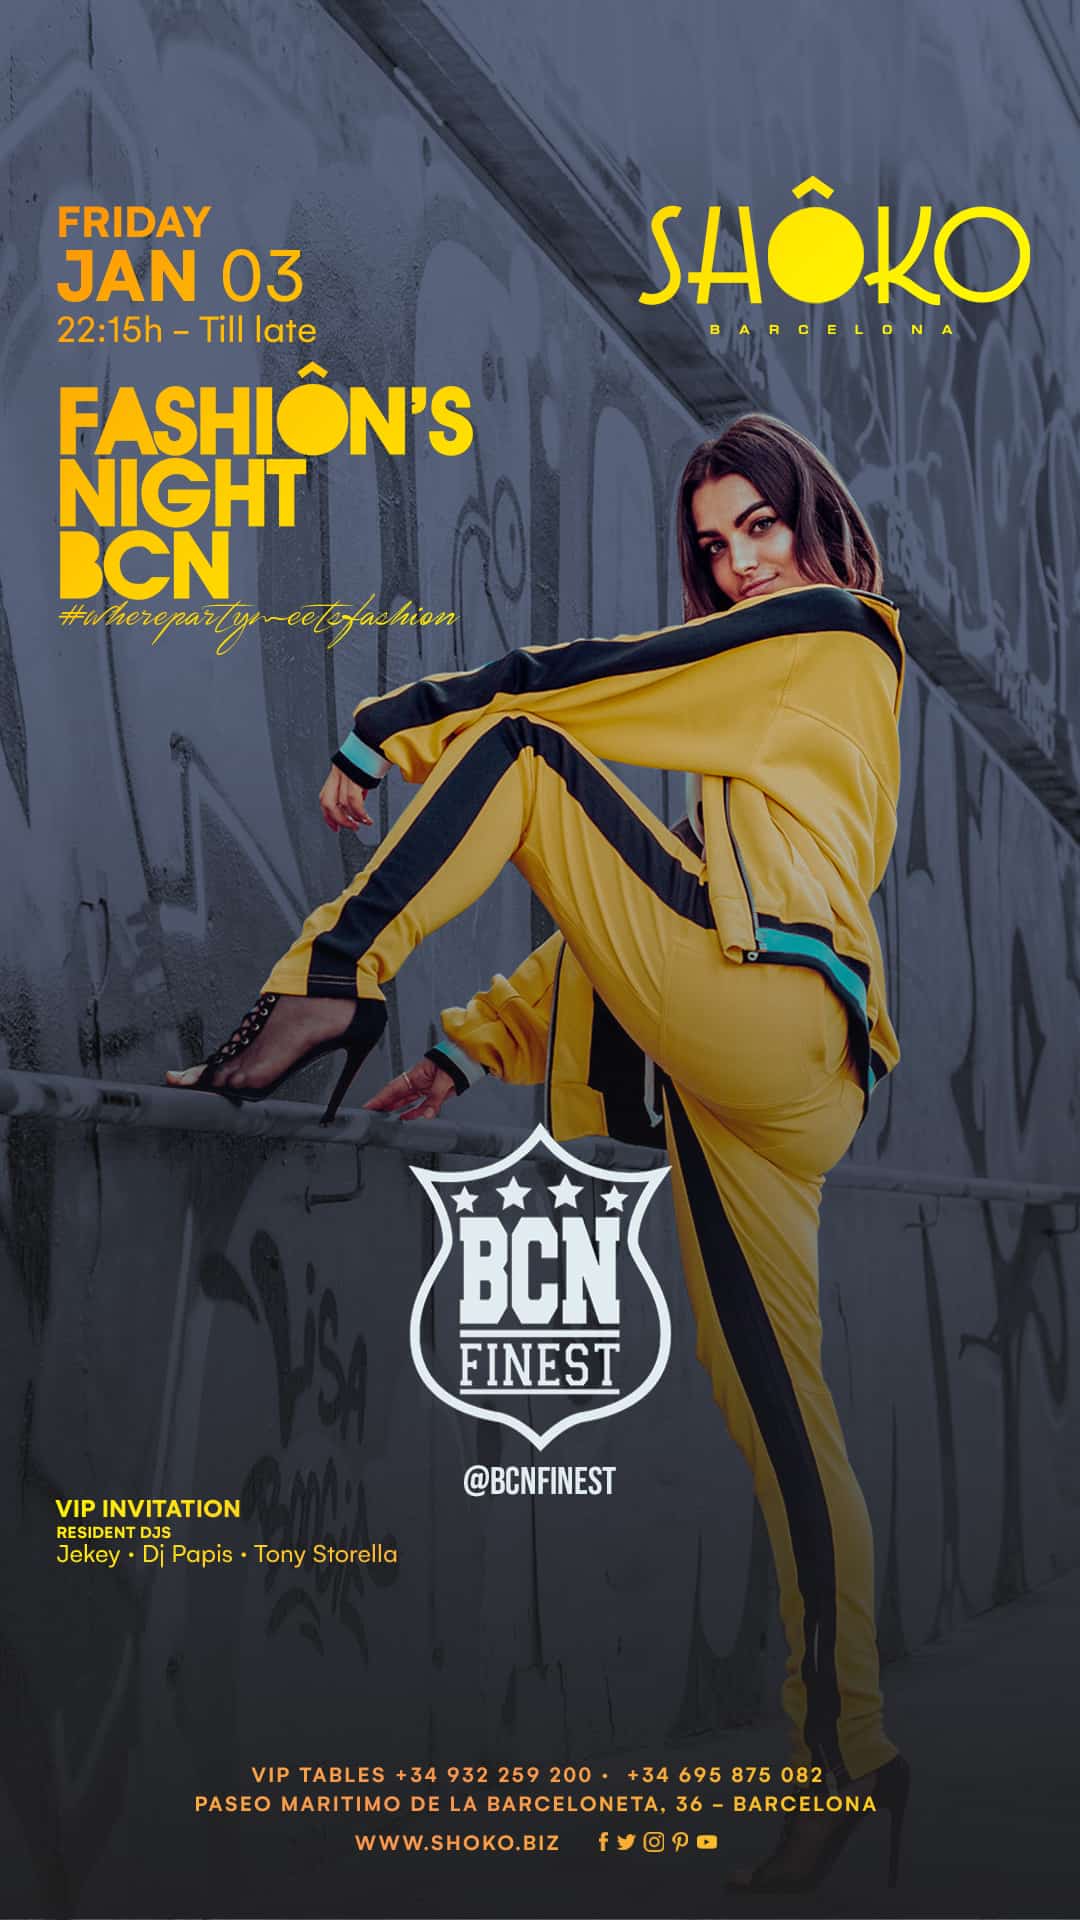 Fashion’s Night BCN